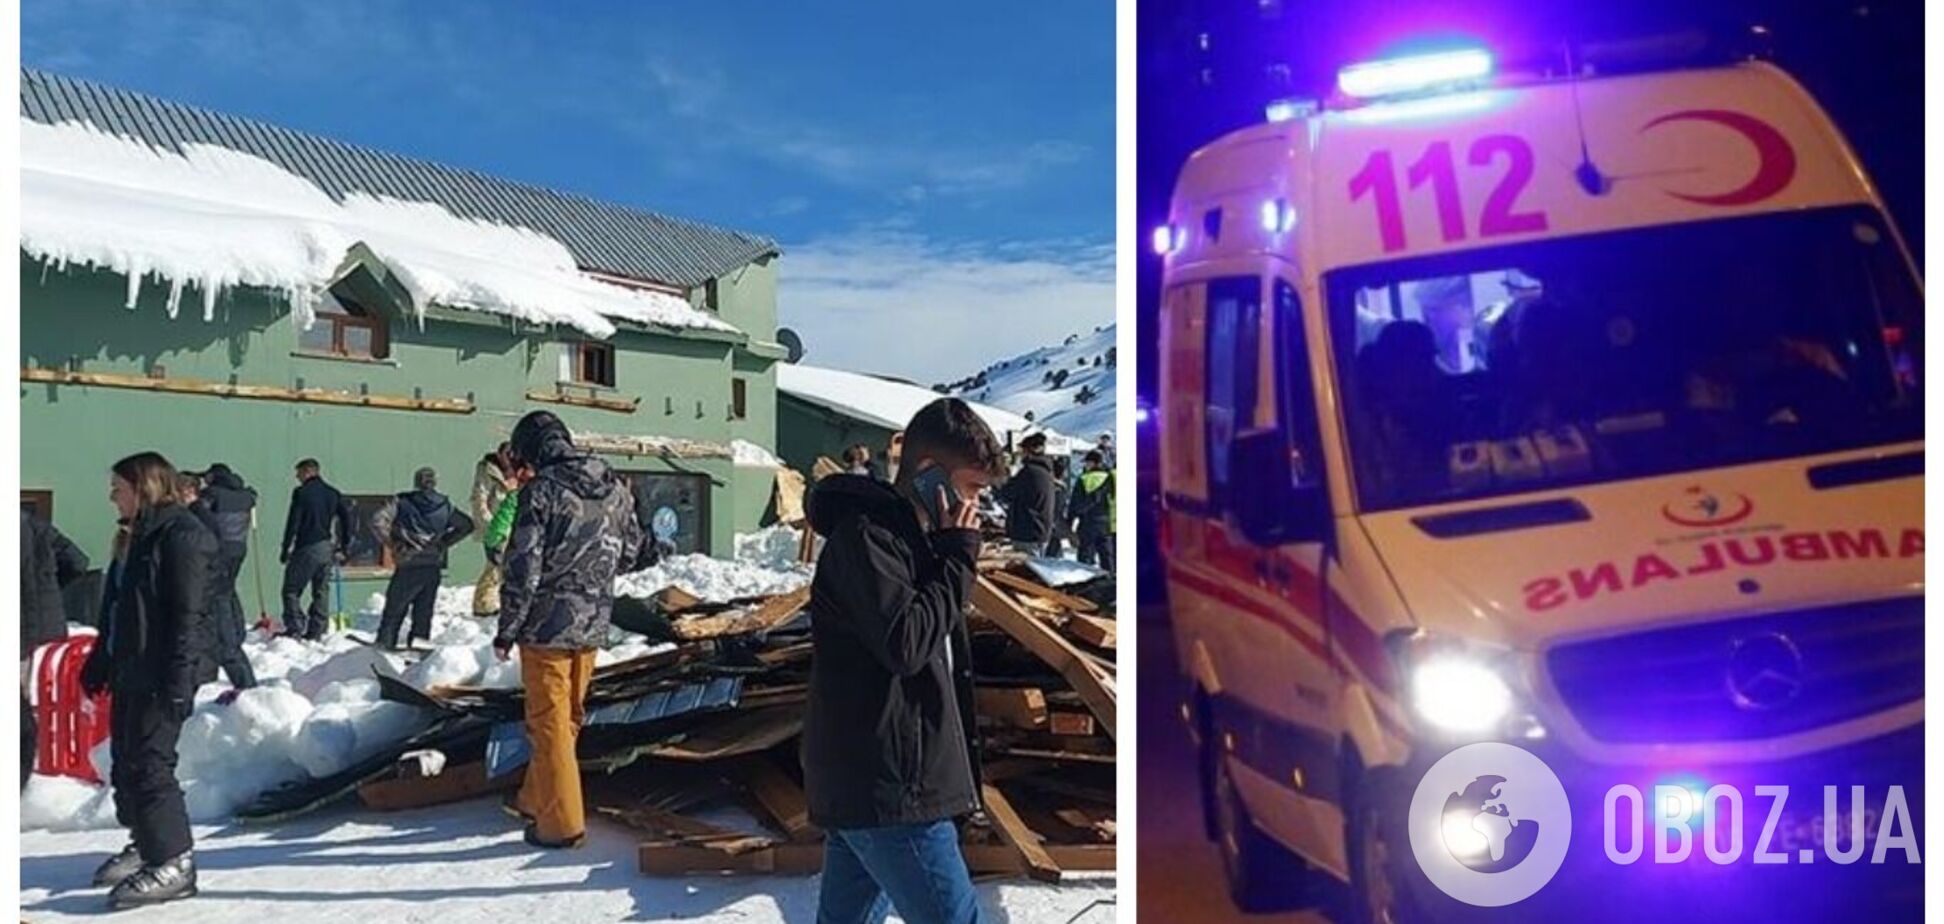 В Турции из-за сильного снегопада рухнул навес в горнолыжном центре, много пострадавших. Фото